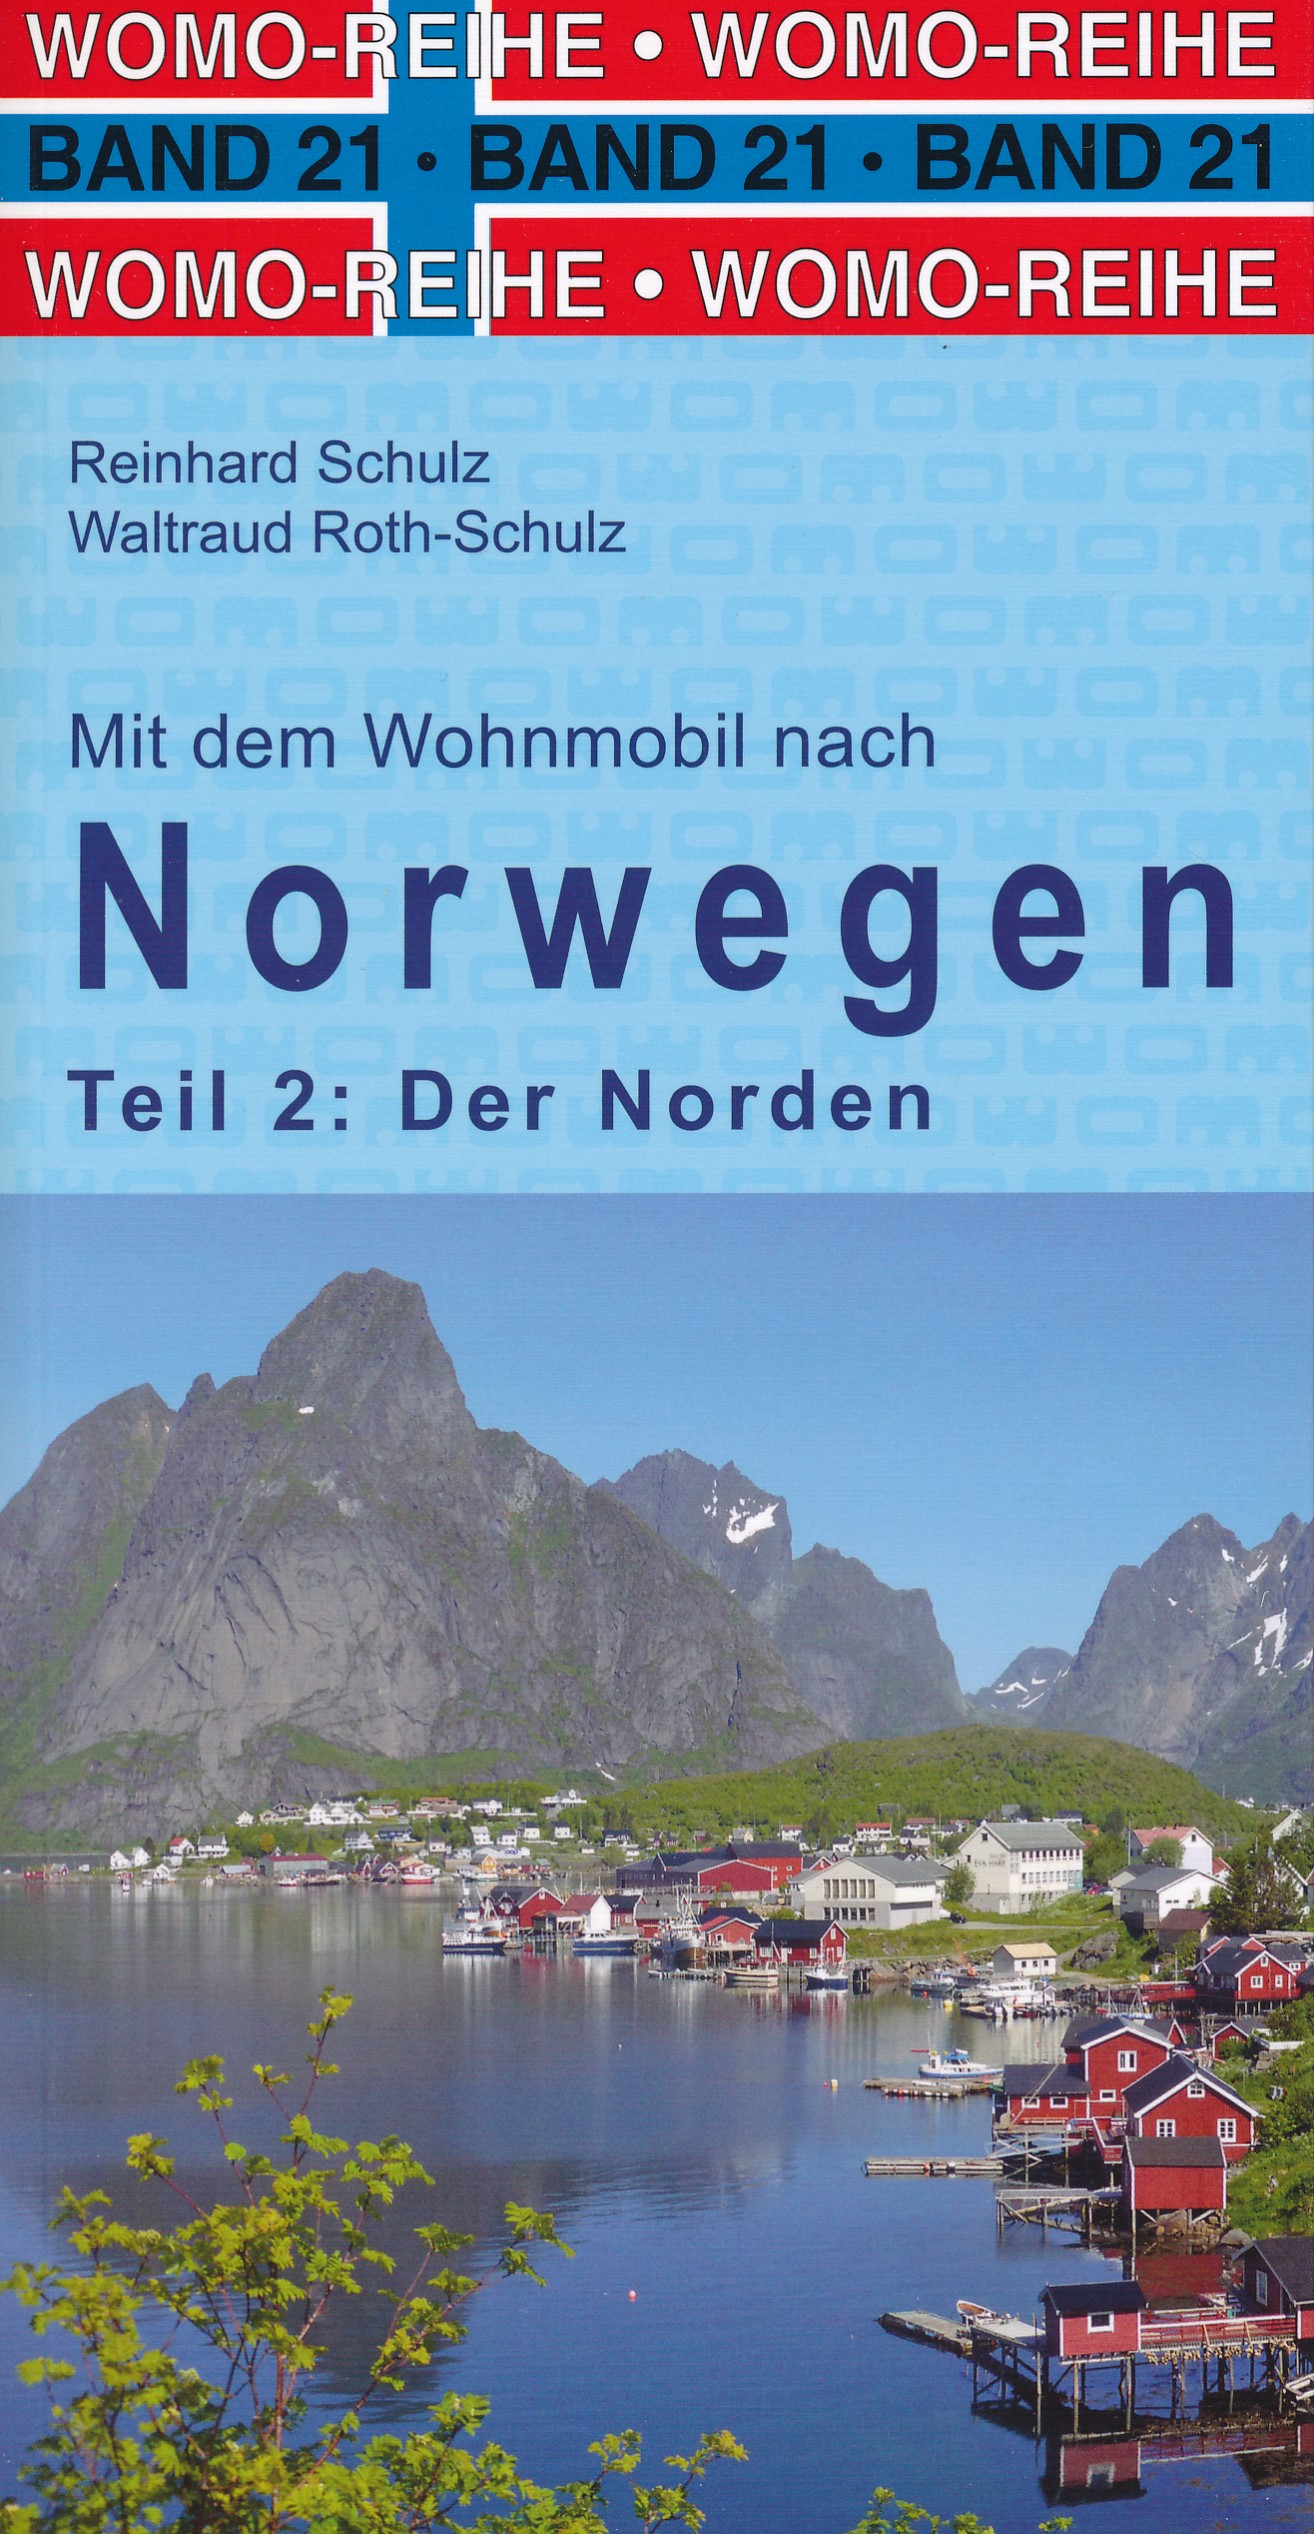 Online bestellen: Campergids 21 Mit dem Wohnmobil nach Nord-Norwegen - Camper Noorwegen Noord | WOMO verlag